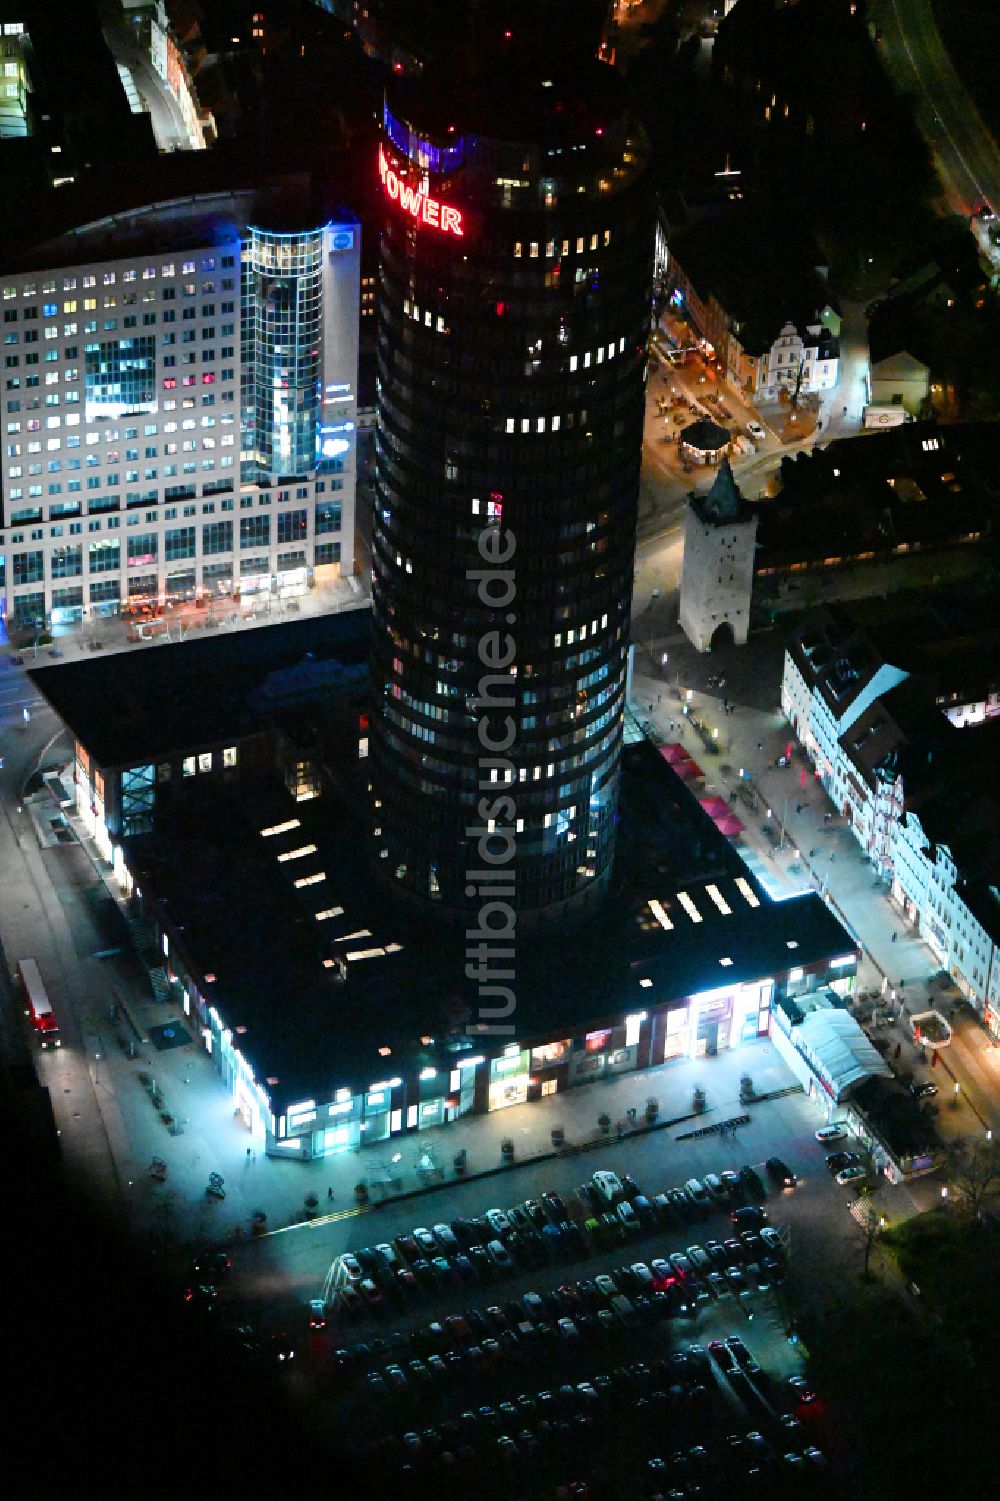 Jena bei Nacht von oben - Nachtluftbild Büro- und Unternehmensverwaltungs- Hochhaus- Gebäude Jentower am Leutragraben in Jena im Bundesland Thüringen, Deutschland